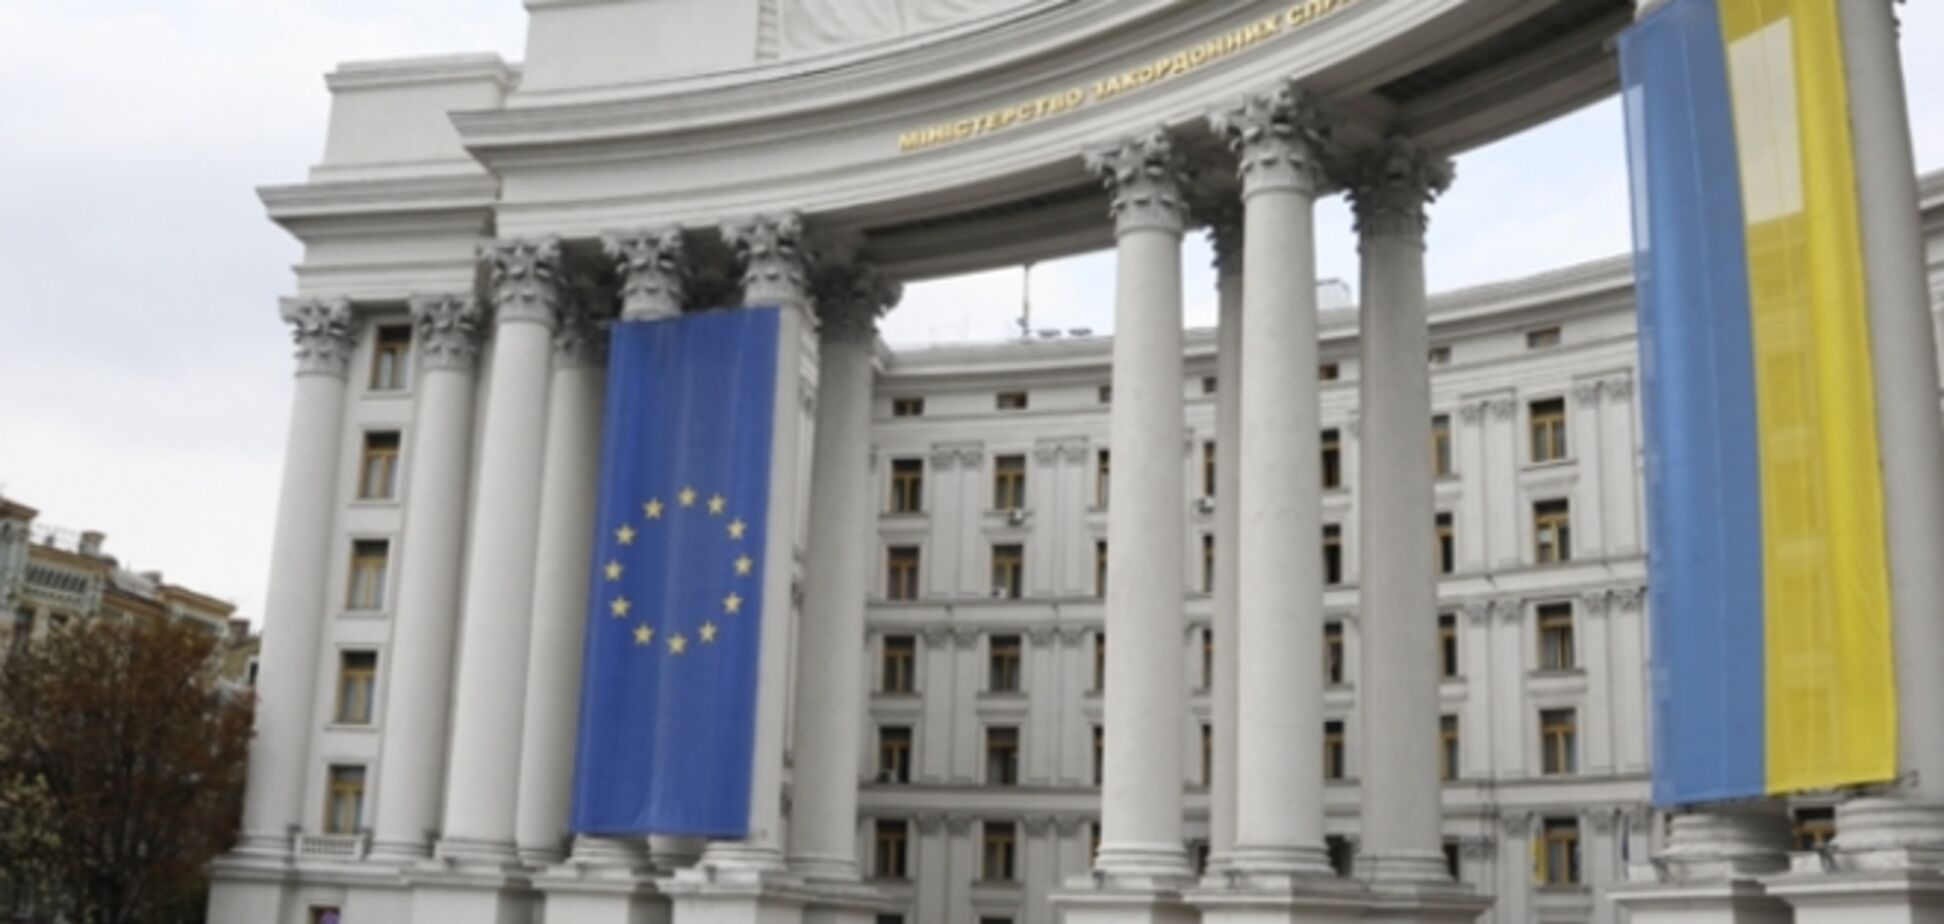 Свою участь в інавгурації президента України вже підтвердили 56 іноземних делегацій - МЗС